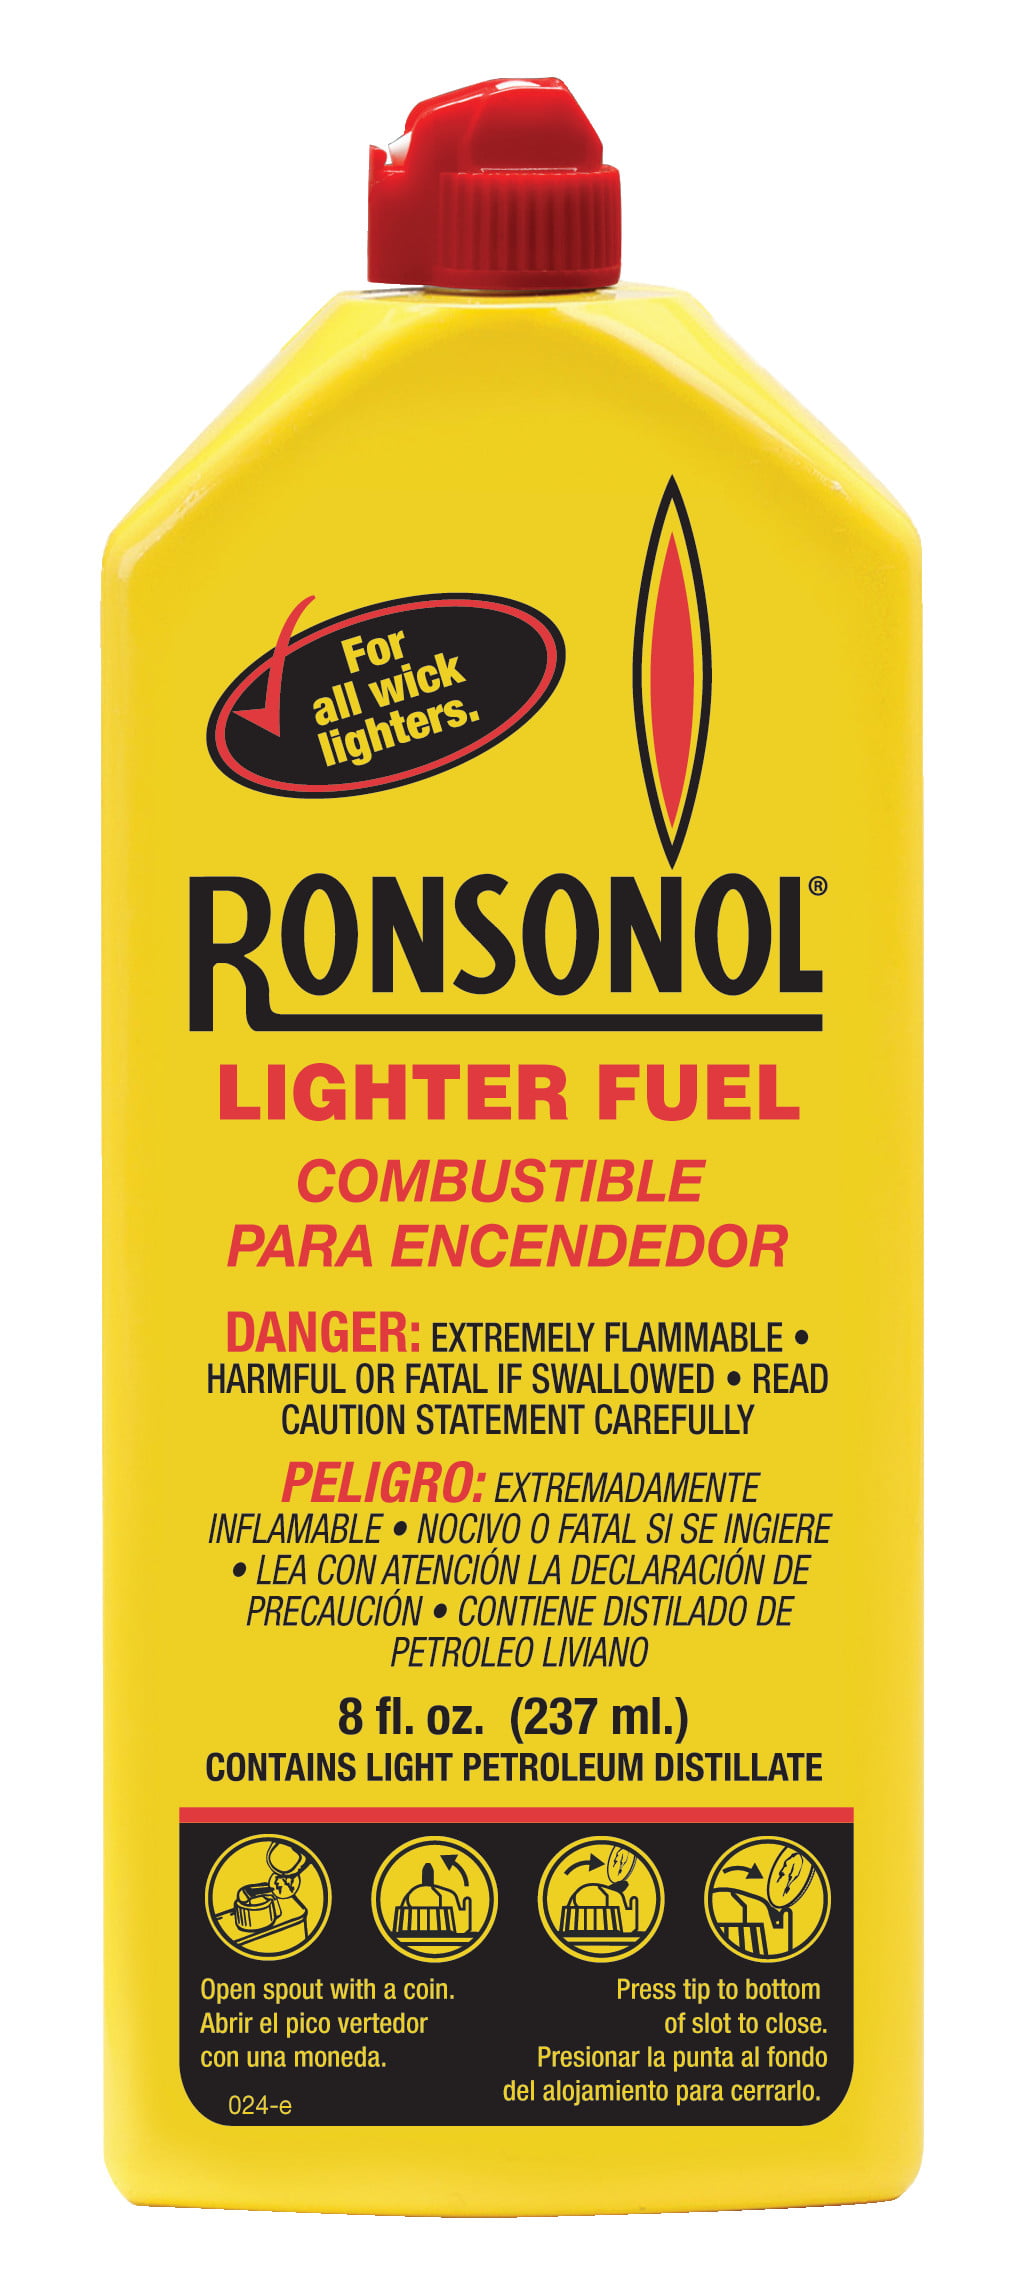 where can i buy ronson lighter fluid